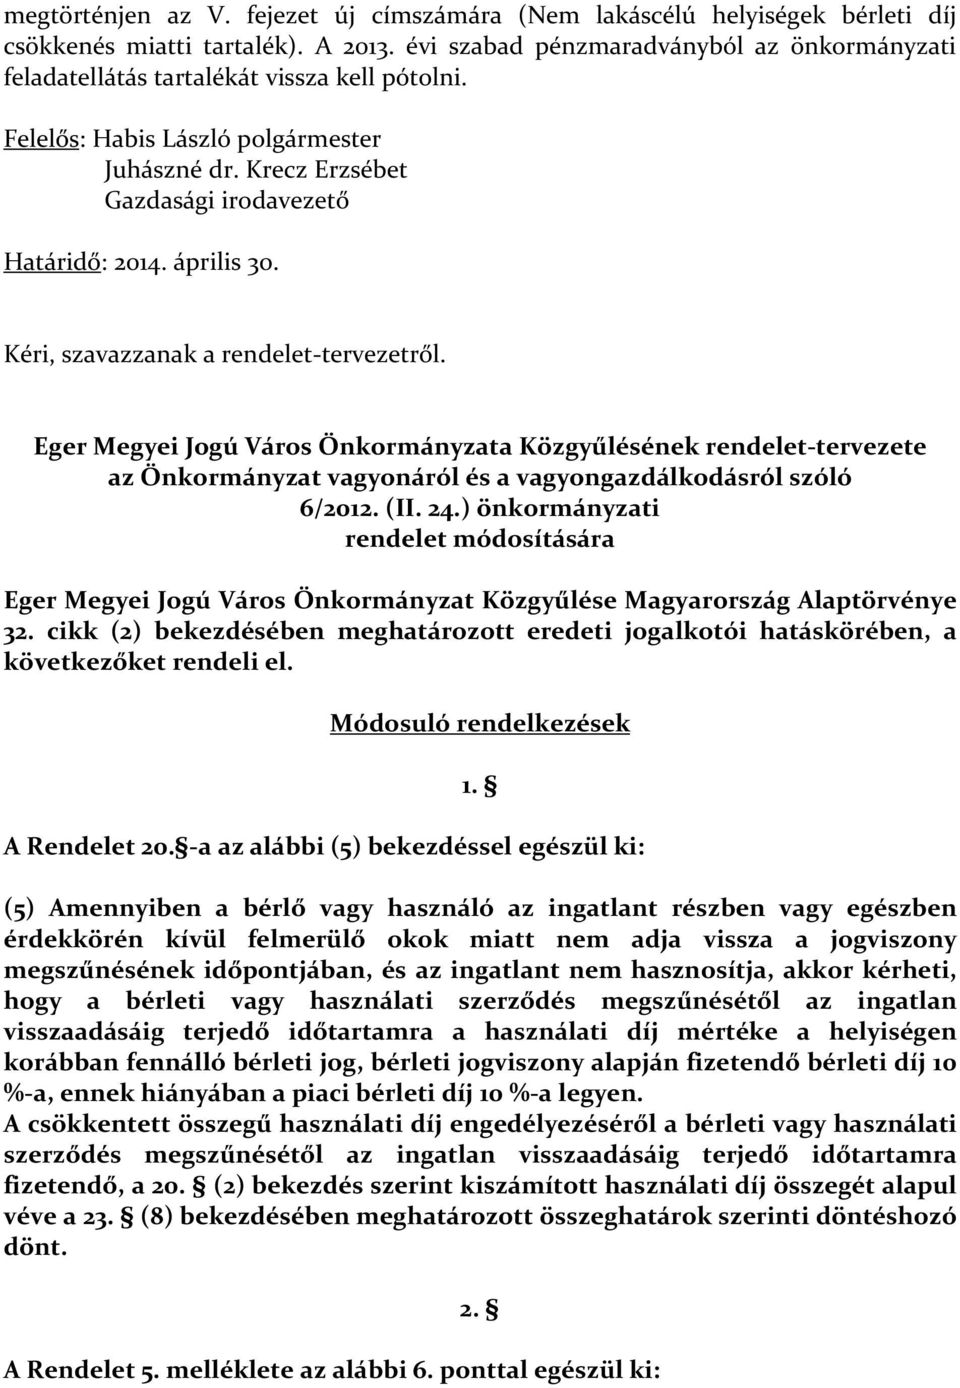 Kéri, szavazzanak a rendelet-tervezetről. Eger Megyei Jogú Város Önkormányzata Közgyűlésének rendelet-tervezete az Önkormányzat vagyonáról és a vagyongazdálkodásról szóló 6/2012. (II. 24.